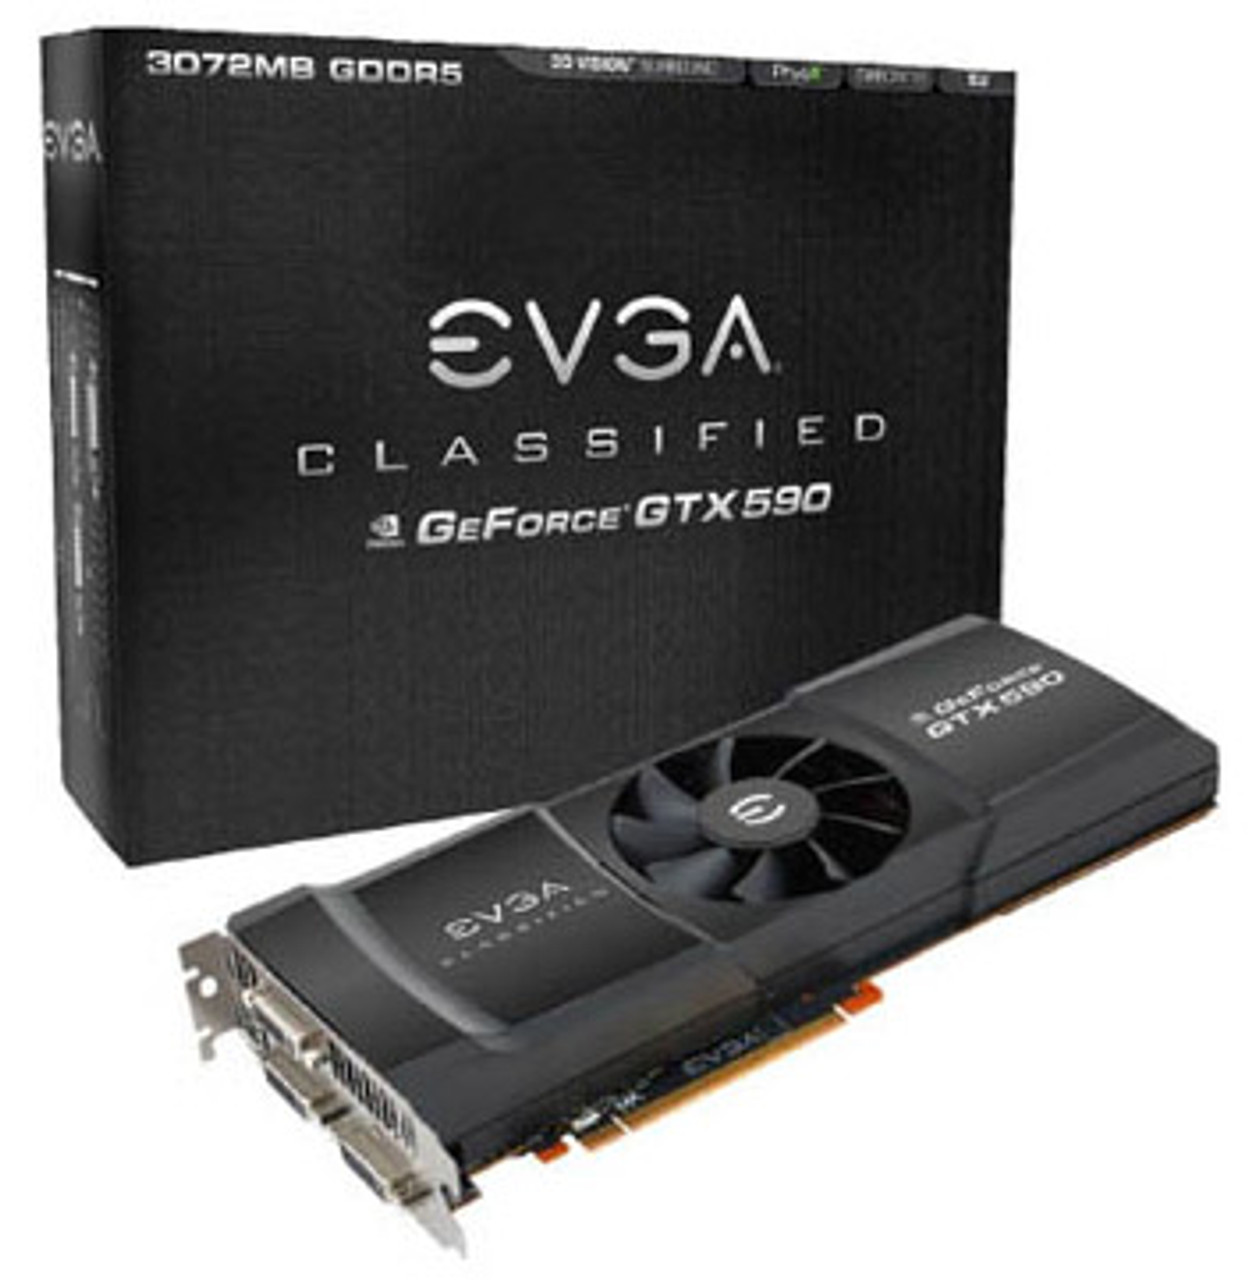 015-P3-1580-AR - EVGA GeForce GTX 580 1536MB 384-Bit GDDR5 PCI Express 2.0 x16 Dual DVI/ mini HDMI Video Graphics Card